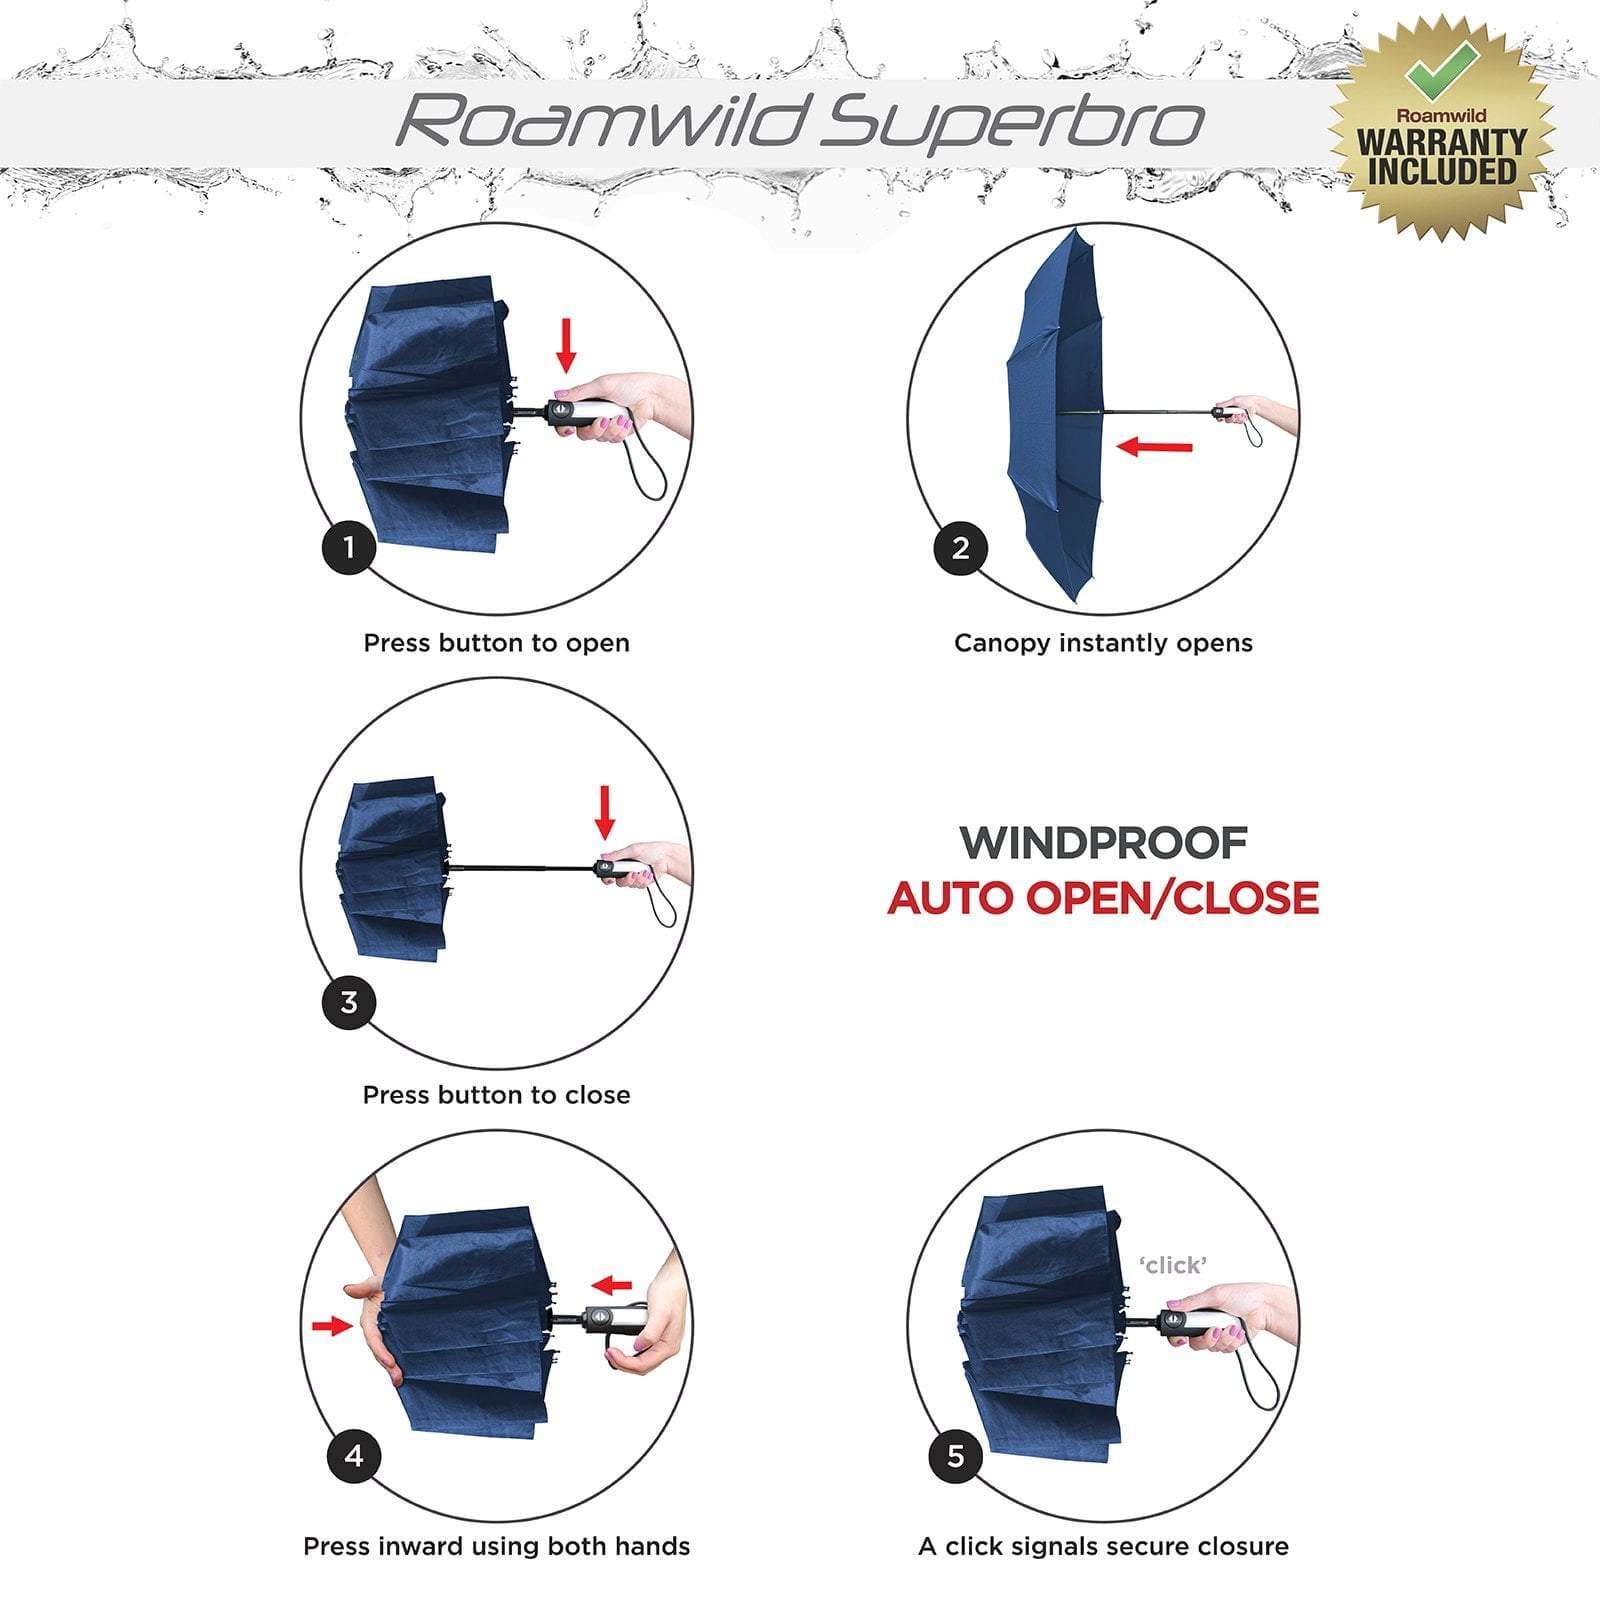 Roamwild SuperBro Folding Travel Umbrella - Roamwild